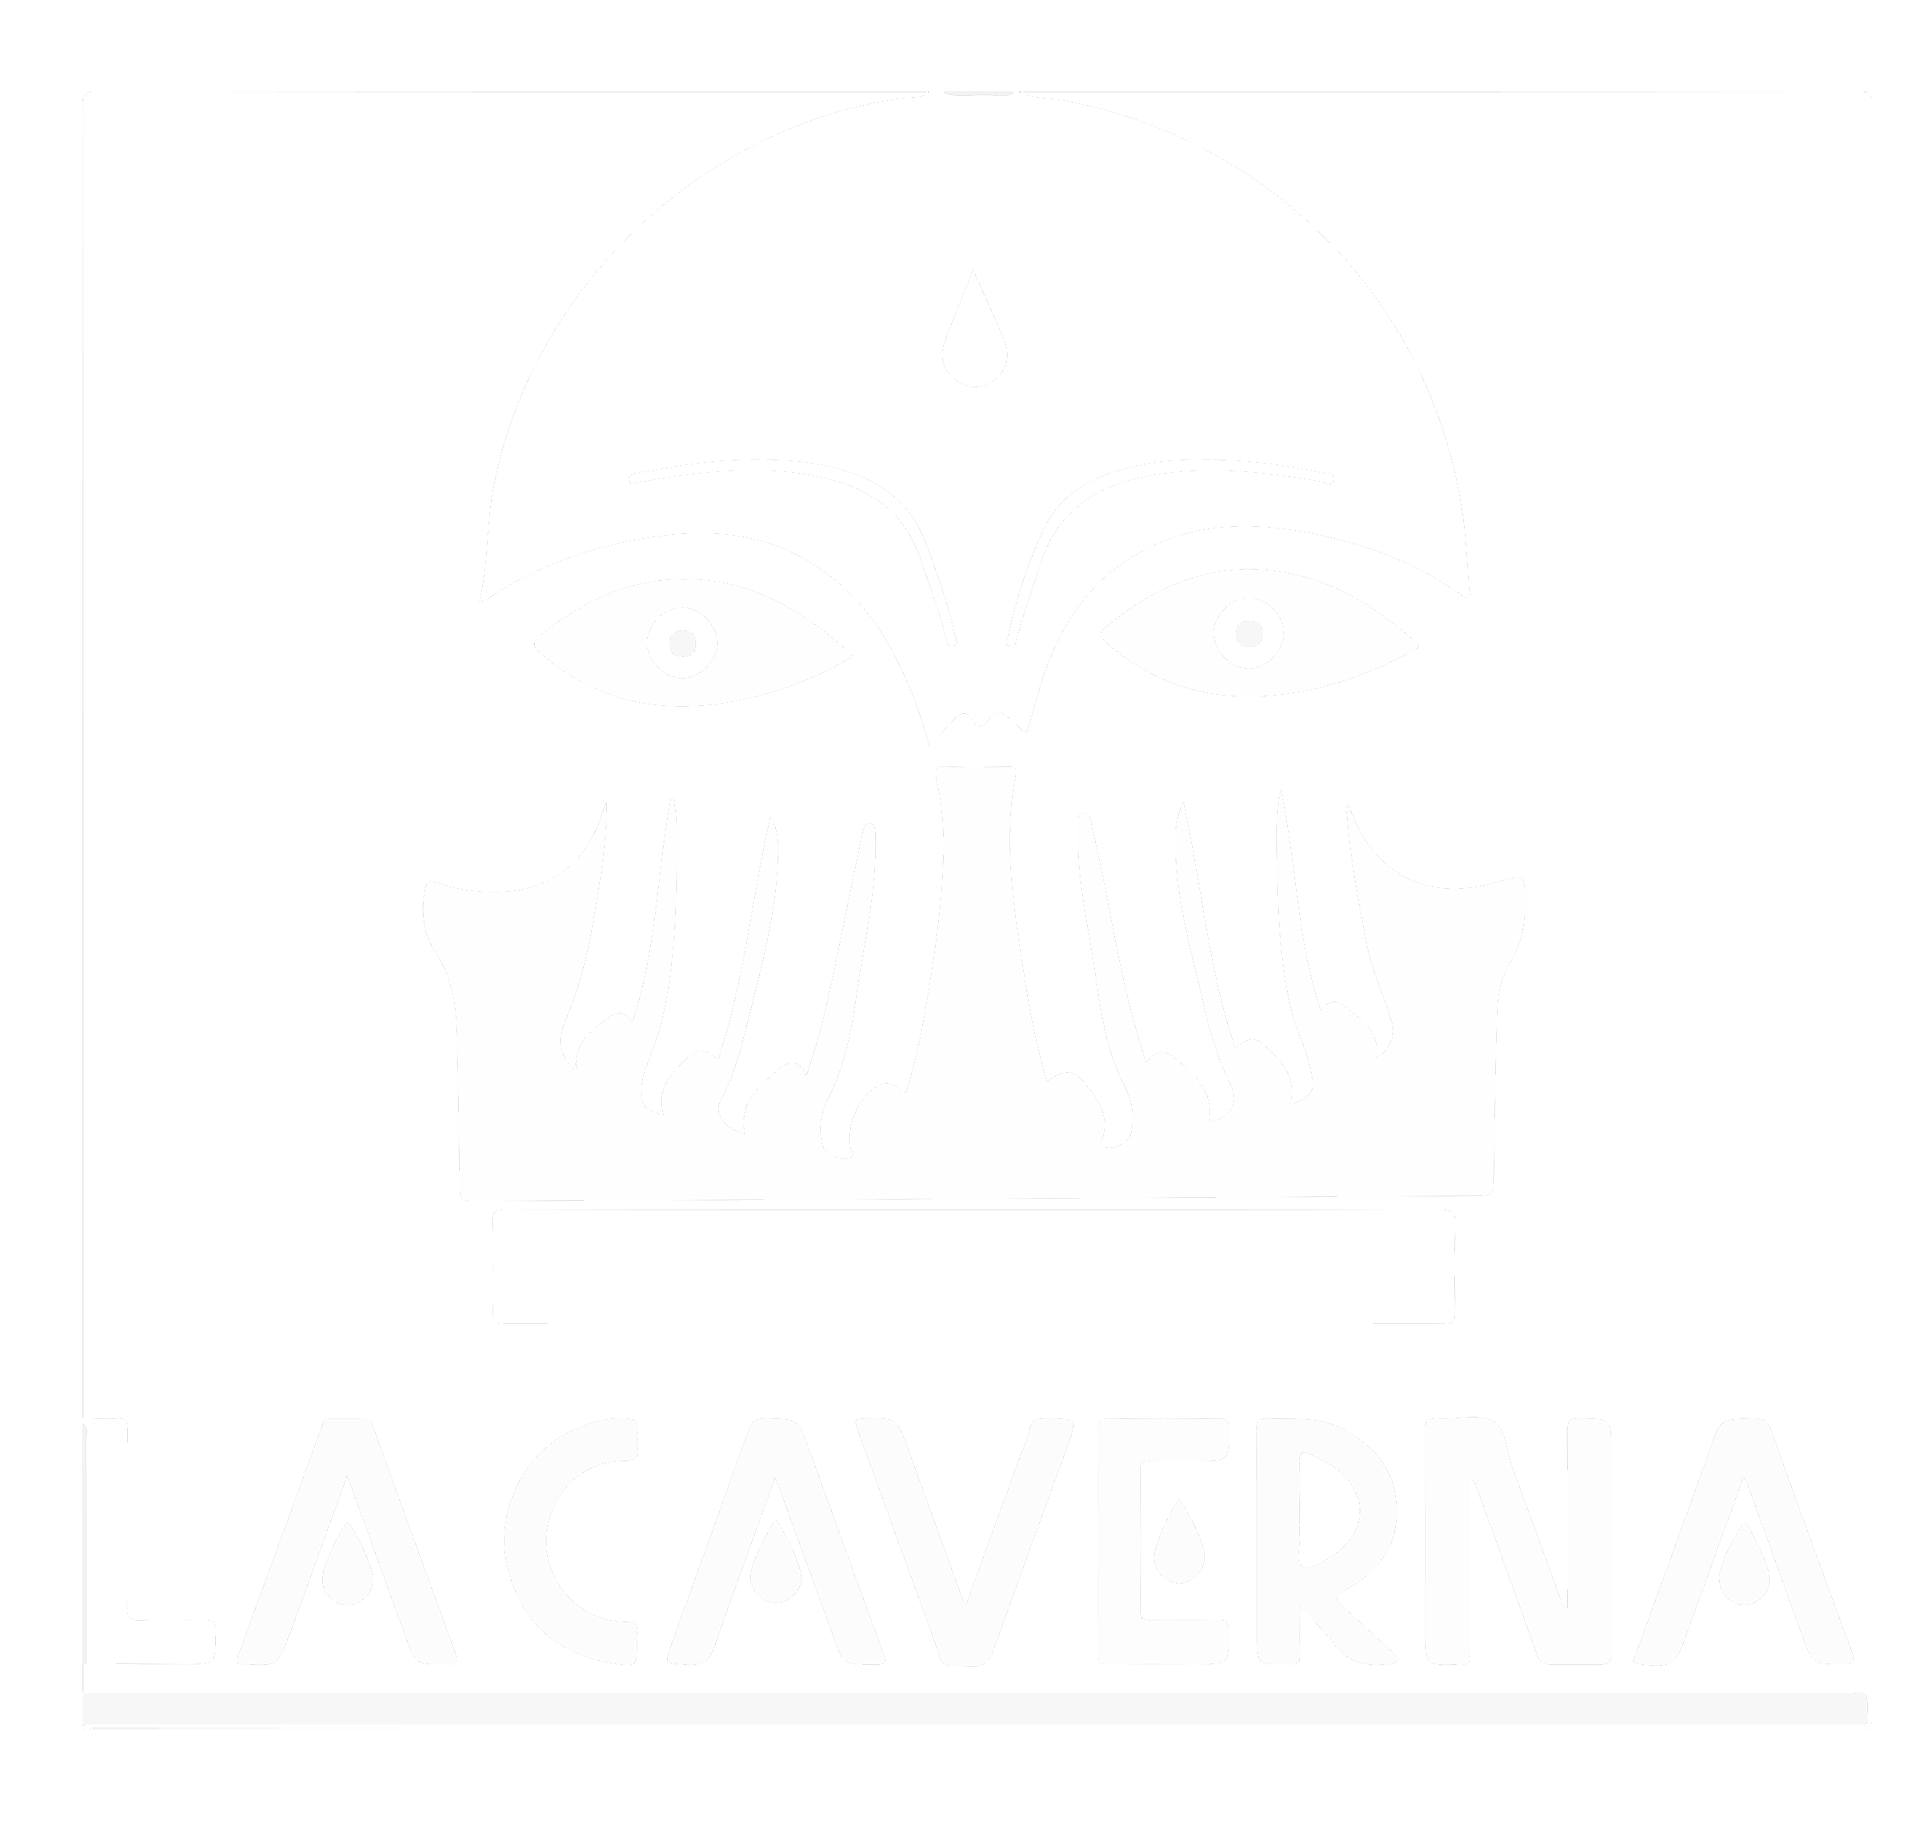 La Caverna